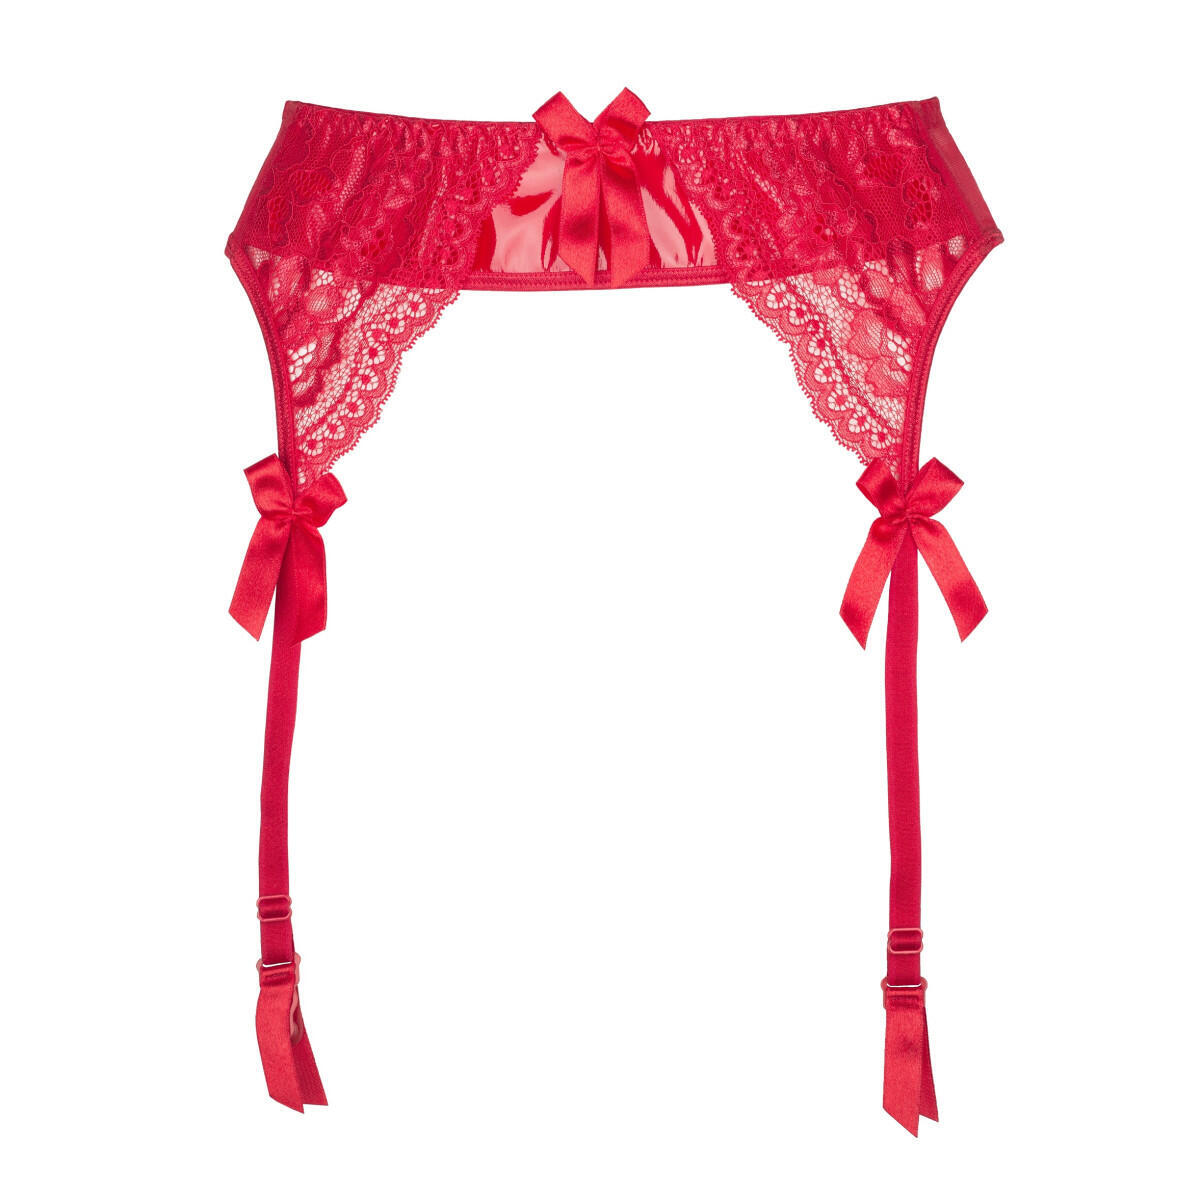 V-8722PS Plus Size garter belt red - Vanity Island Hot